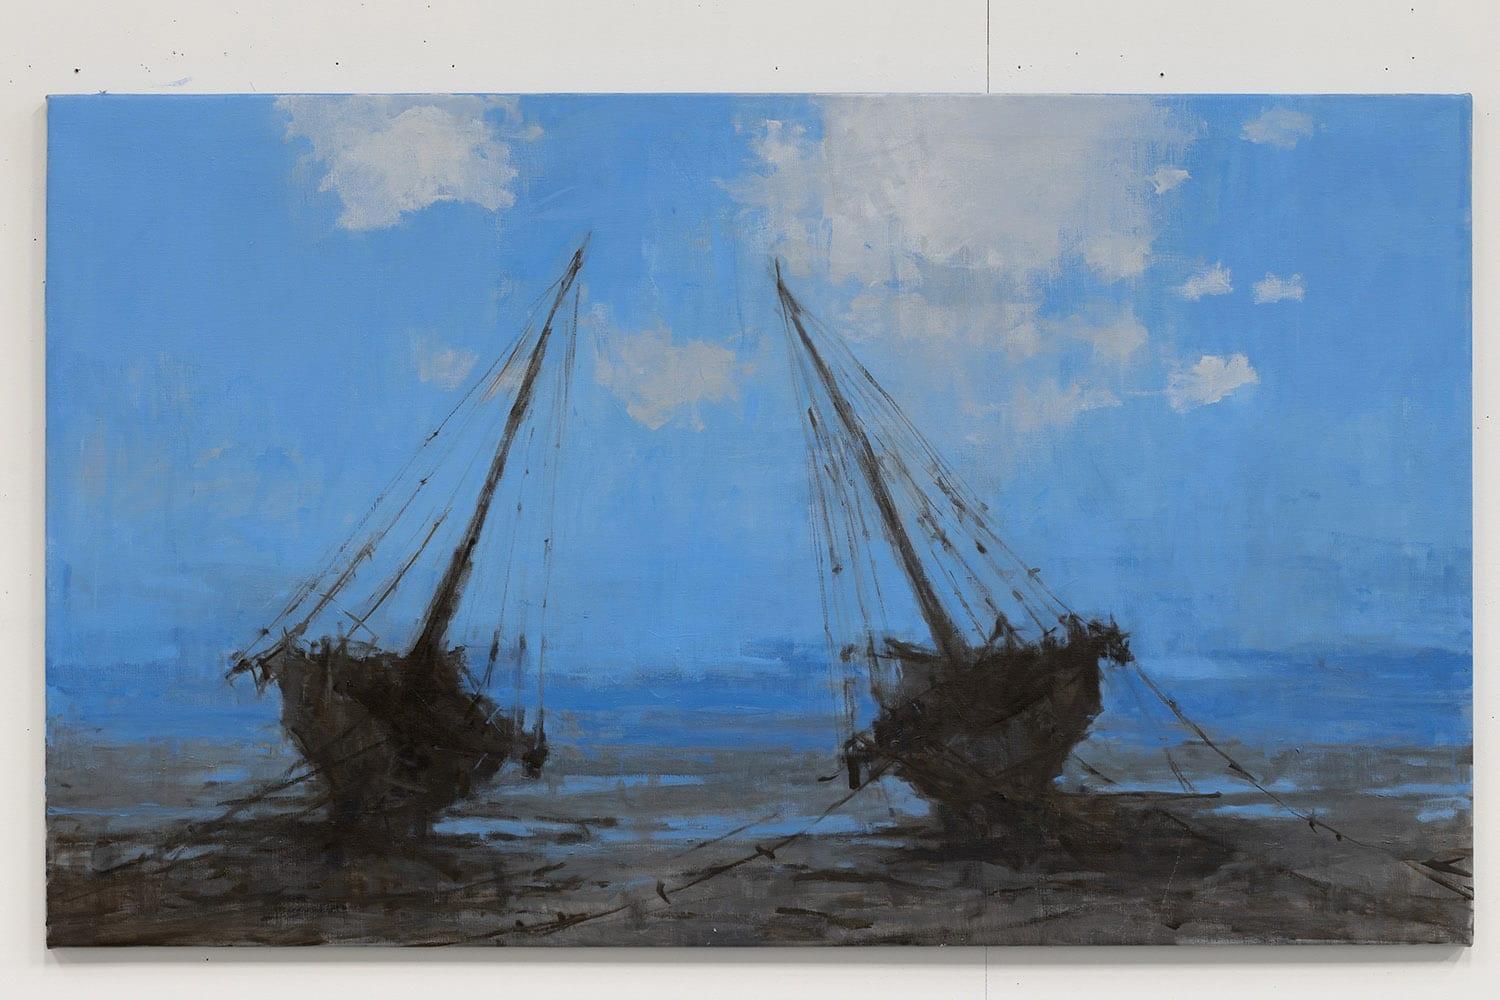 Barcas en Bagamoyo II by Calo Carratalá - Seascape painting, blue colours, boats For Sale 2